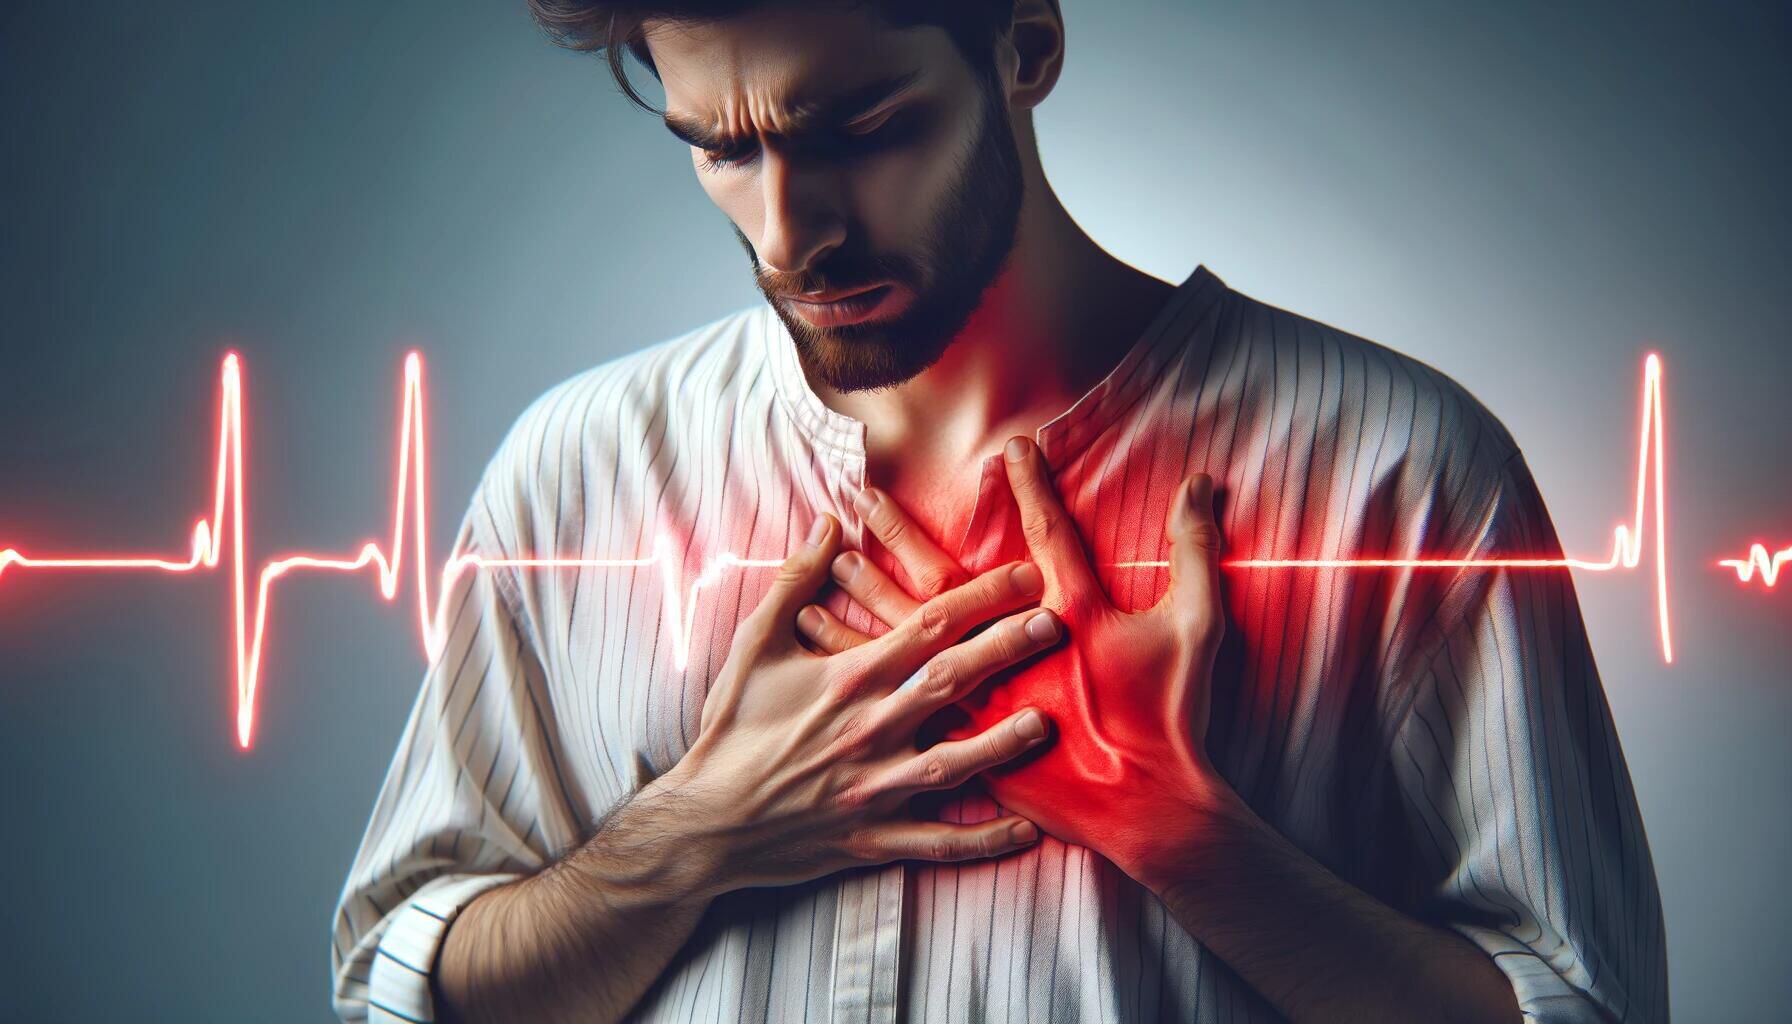 Imagen gráfica de una persona expresando dolor en el pecho, resaltado en rojo. Se visualiza una representación de electrocardiograma. Conciencia sobre riesgos cardíacos, cuidado del corazón y la importancia de la salud. (Imagen ilustrativa Infobae)